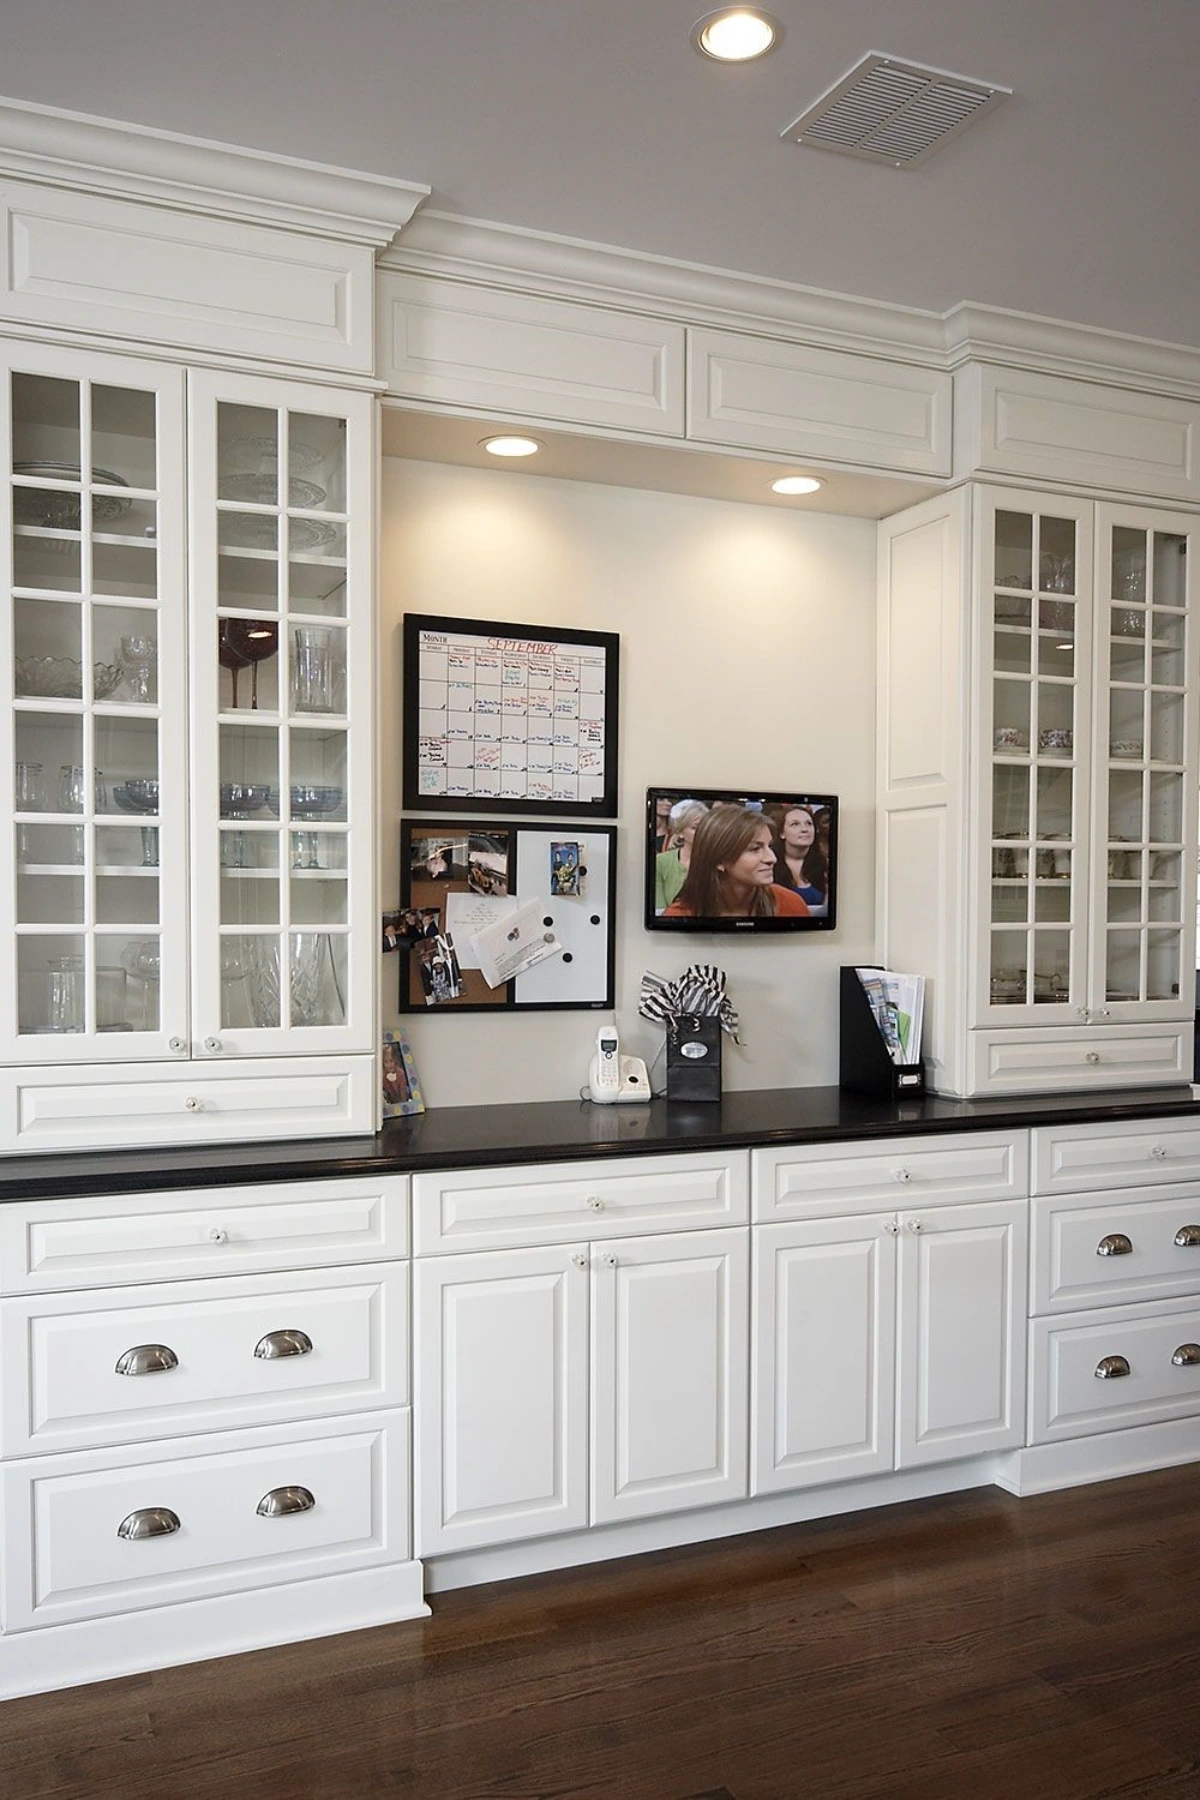 کمد دیواری با درب شیشه ای برای ظروف پذیرایی به همراه کمد درب چوبی به رنگ سفید